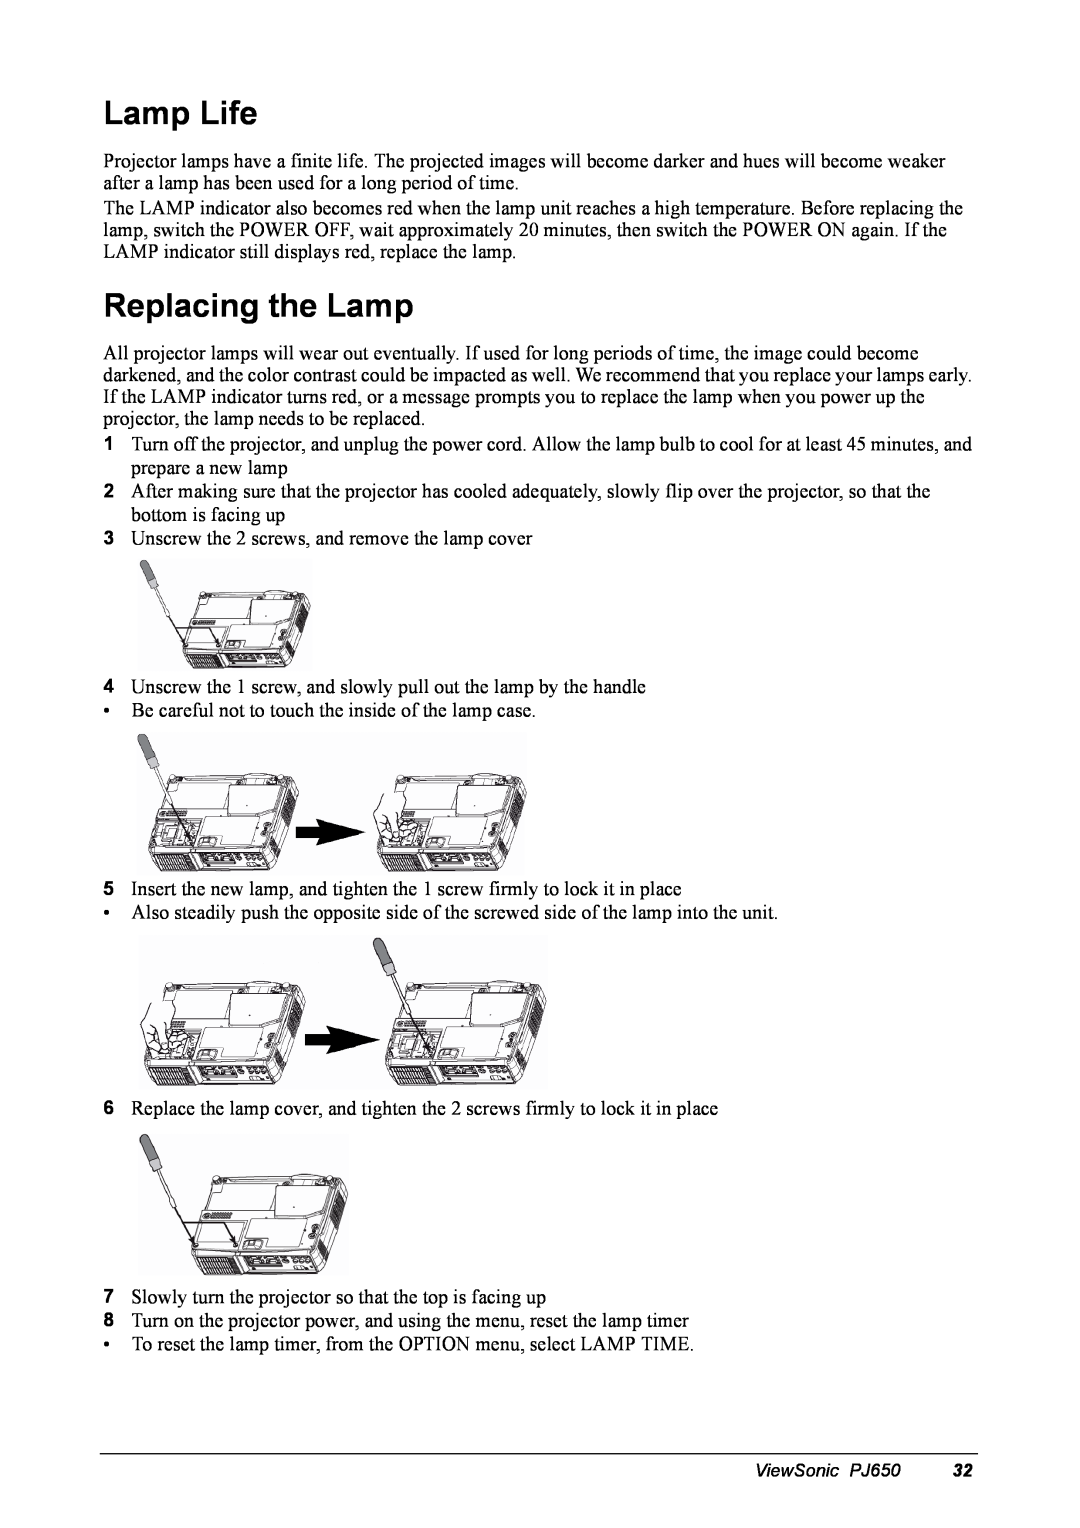 ViewSonic PJ650 manual Lamp Life, Replacing the Lamp 